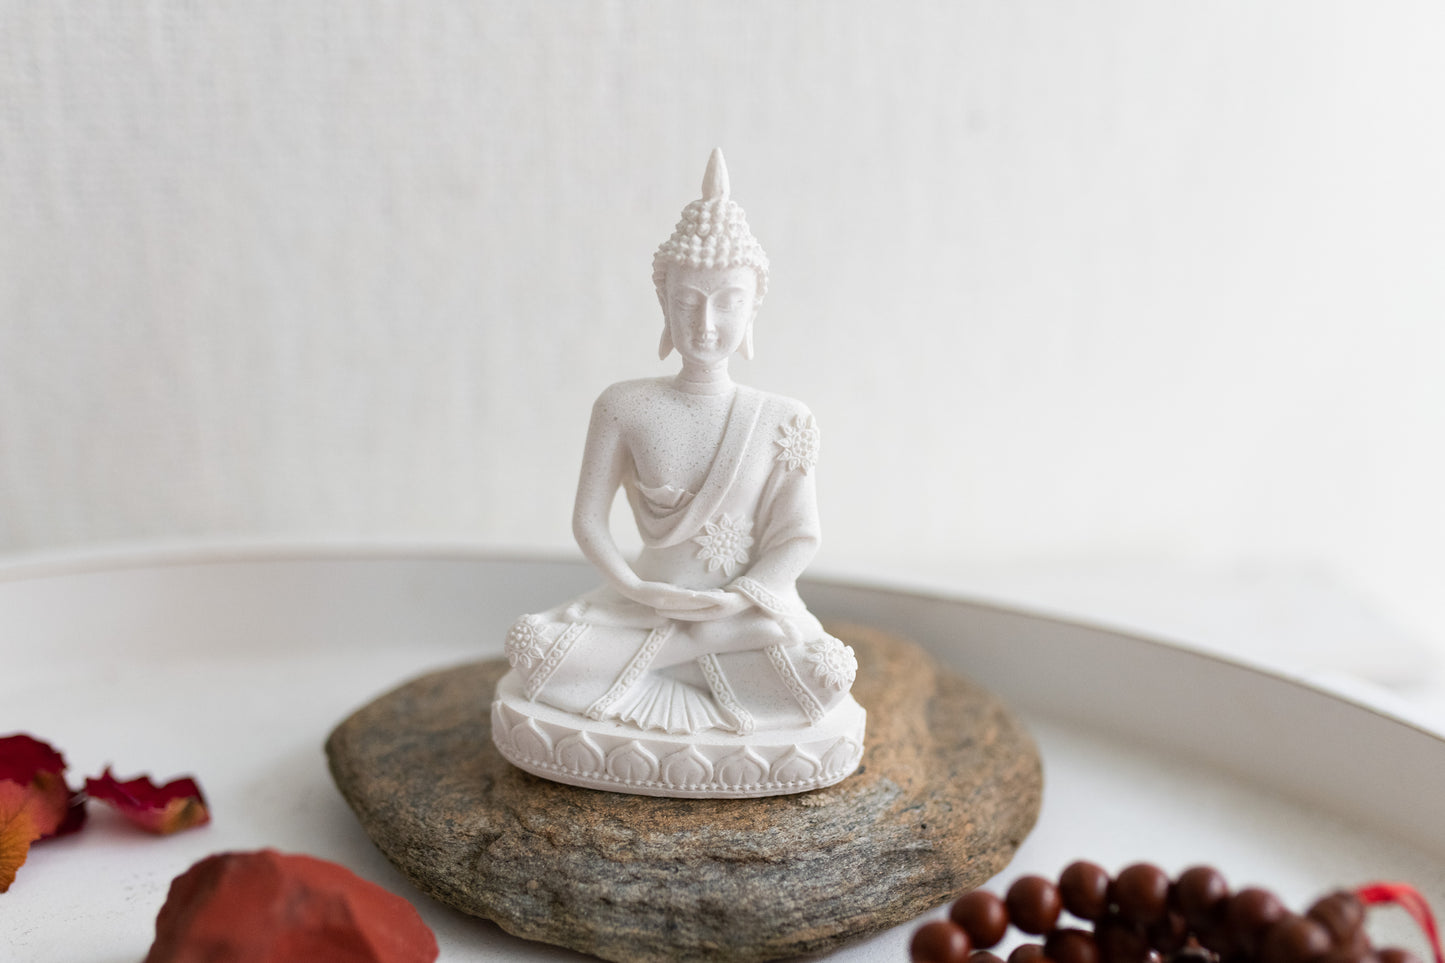 Deko Buddha-Statue in Meditationshaltung als spirituelle Deko - Kreiere deinen wunderschönen Altar und Kraftplatz für Rituale, Zeremonien und Spiritualität